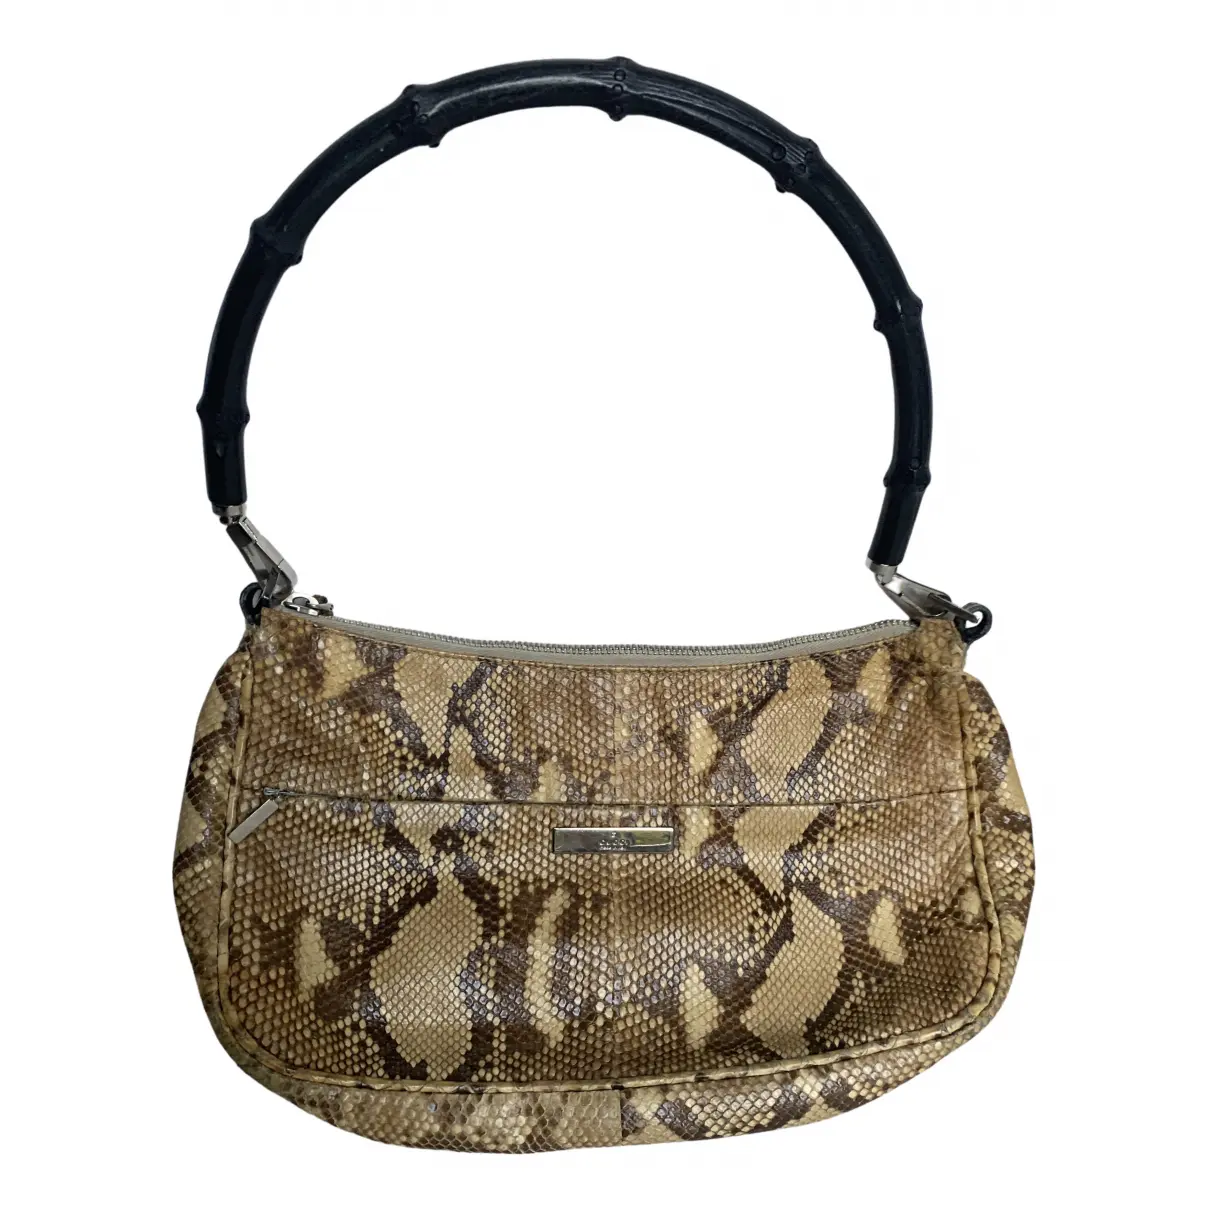 Bamboo python handbag Gucci